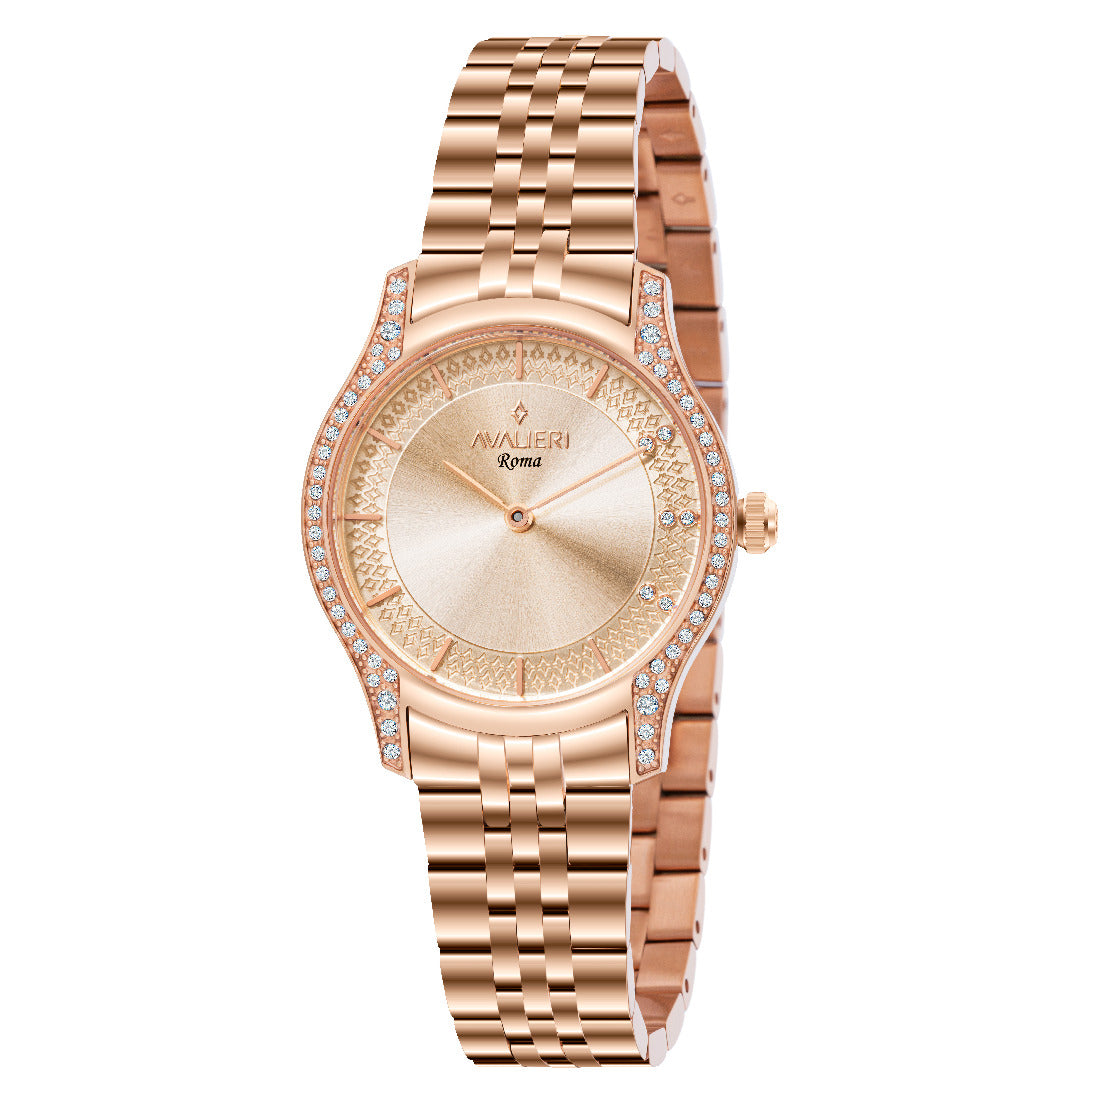 Avalieri Women's Quartz Watch Rose Gold Dial - AV-2570B